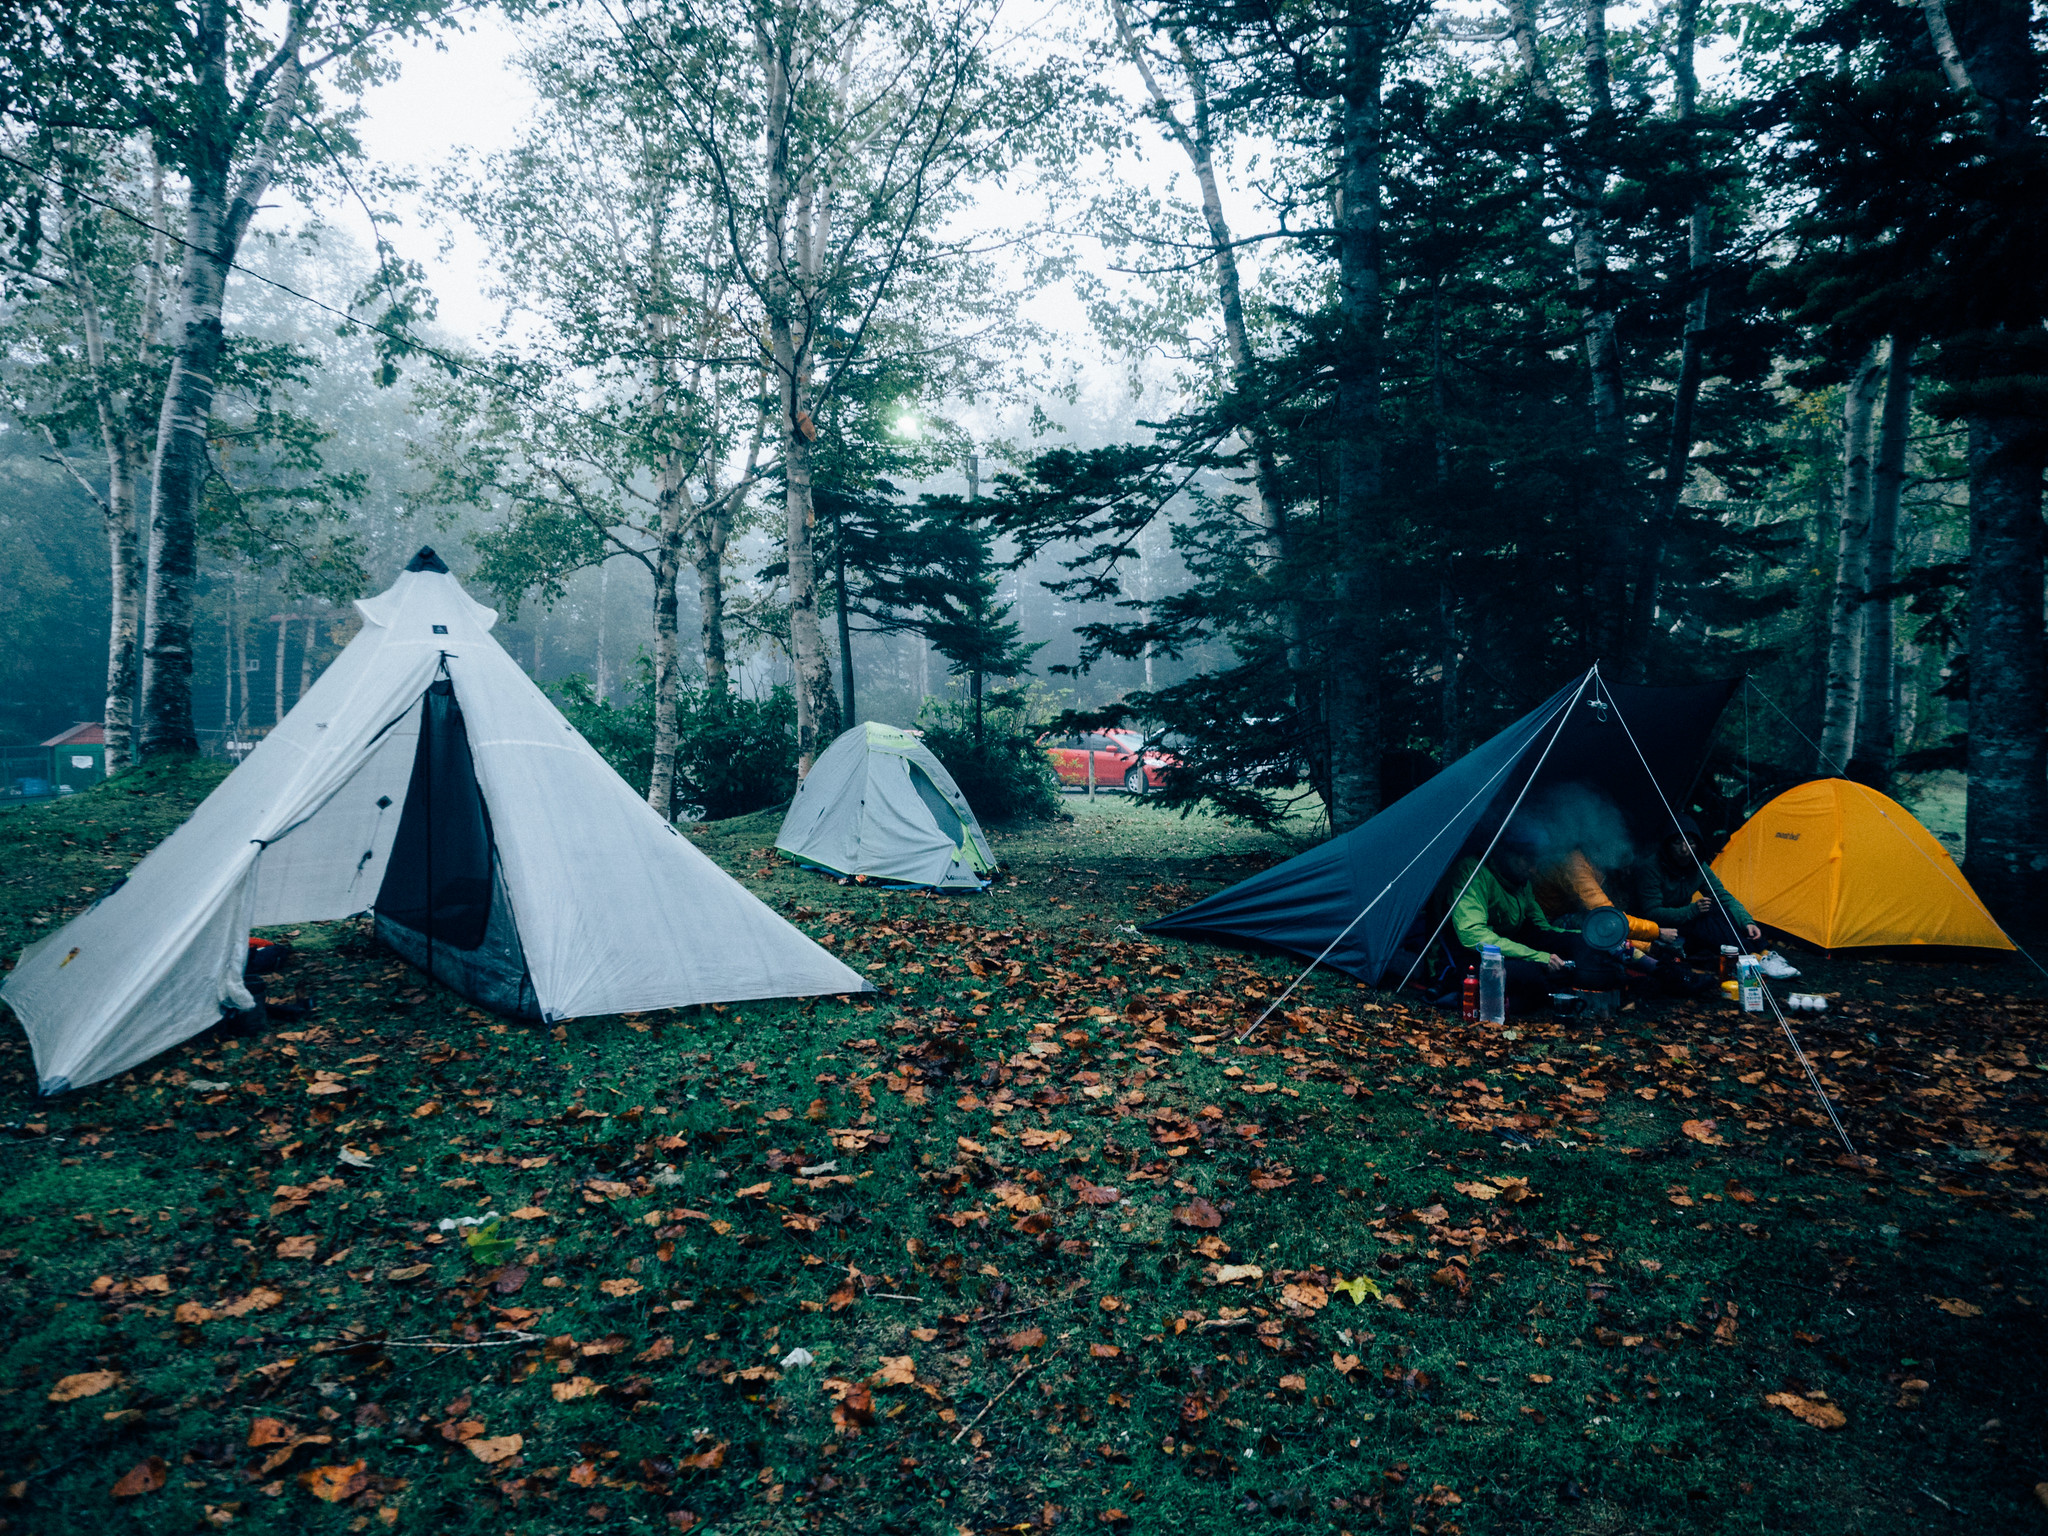 Campsite in Shirogane, Hokkaido Japan